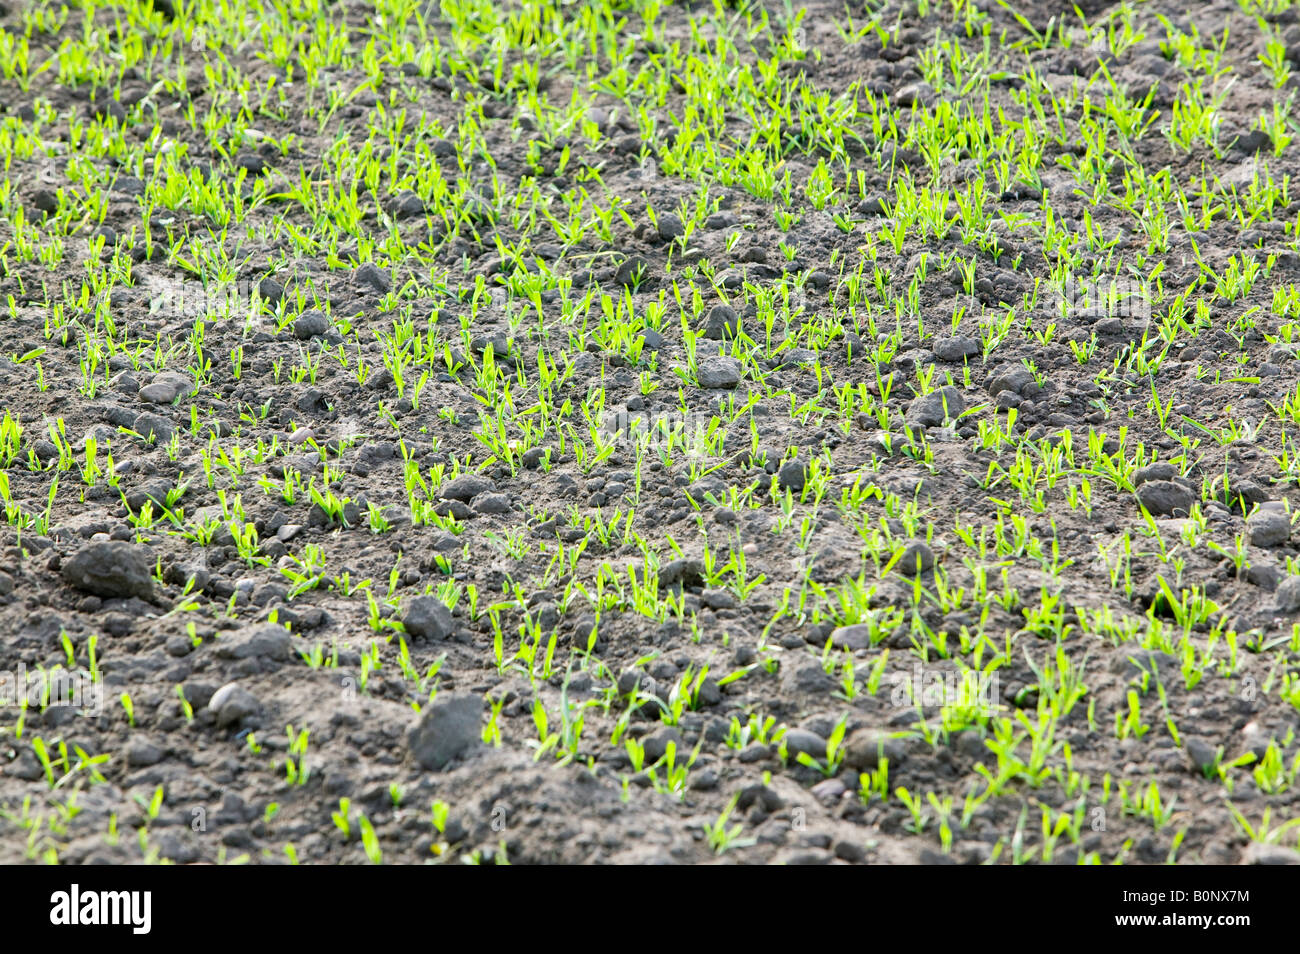 Pflanzen wachsen in einem Feld in Lincolnshire UK Boden speichert große Mengen an C02, die freigesetzt wird, wenn Bauern Felder pflügen Stockfoto